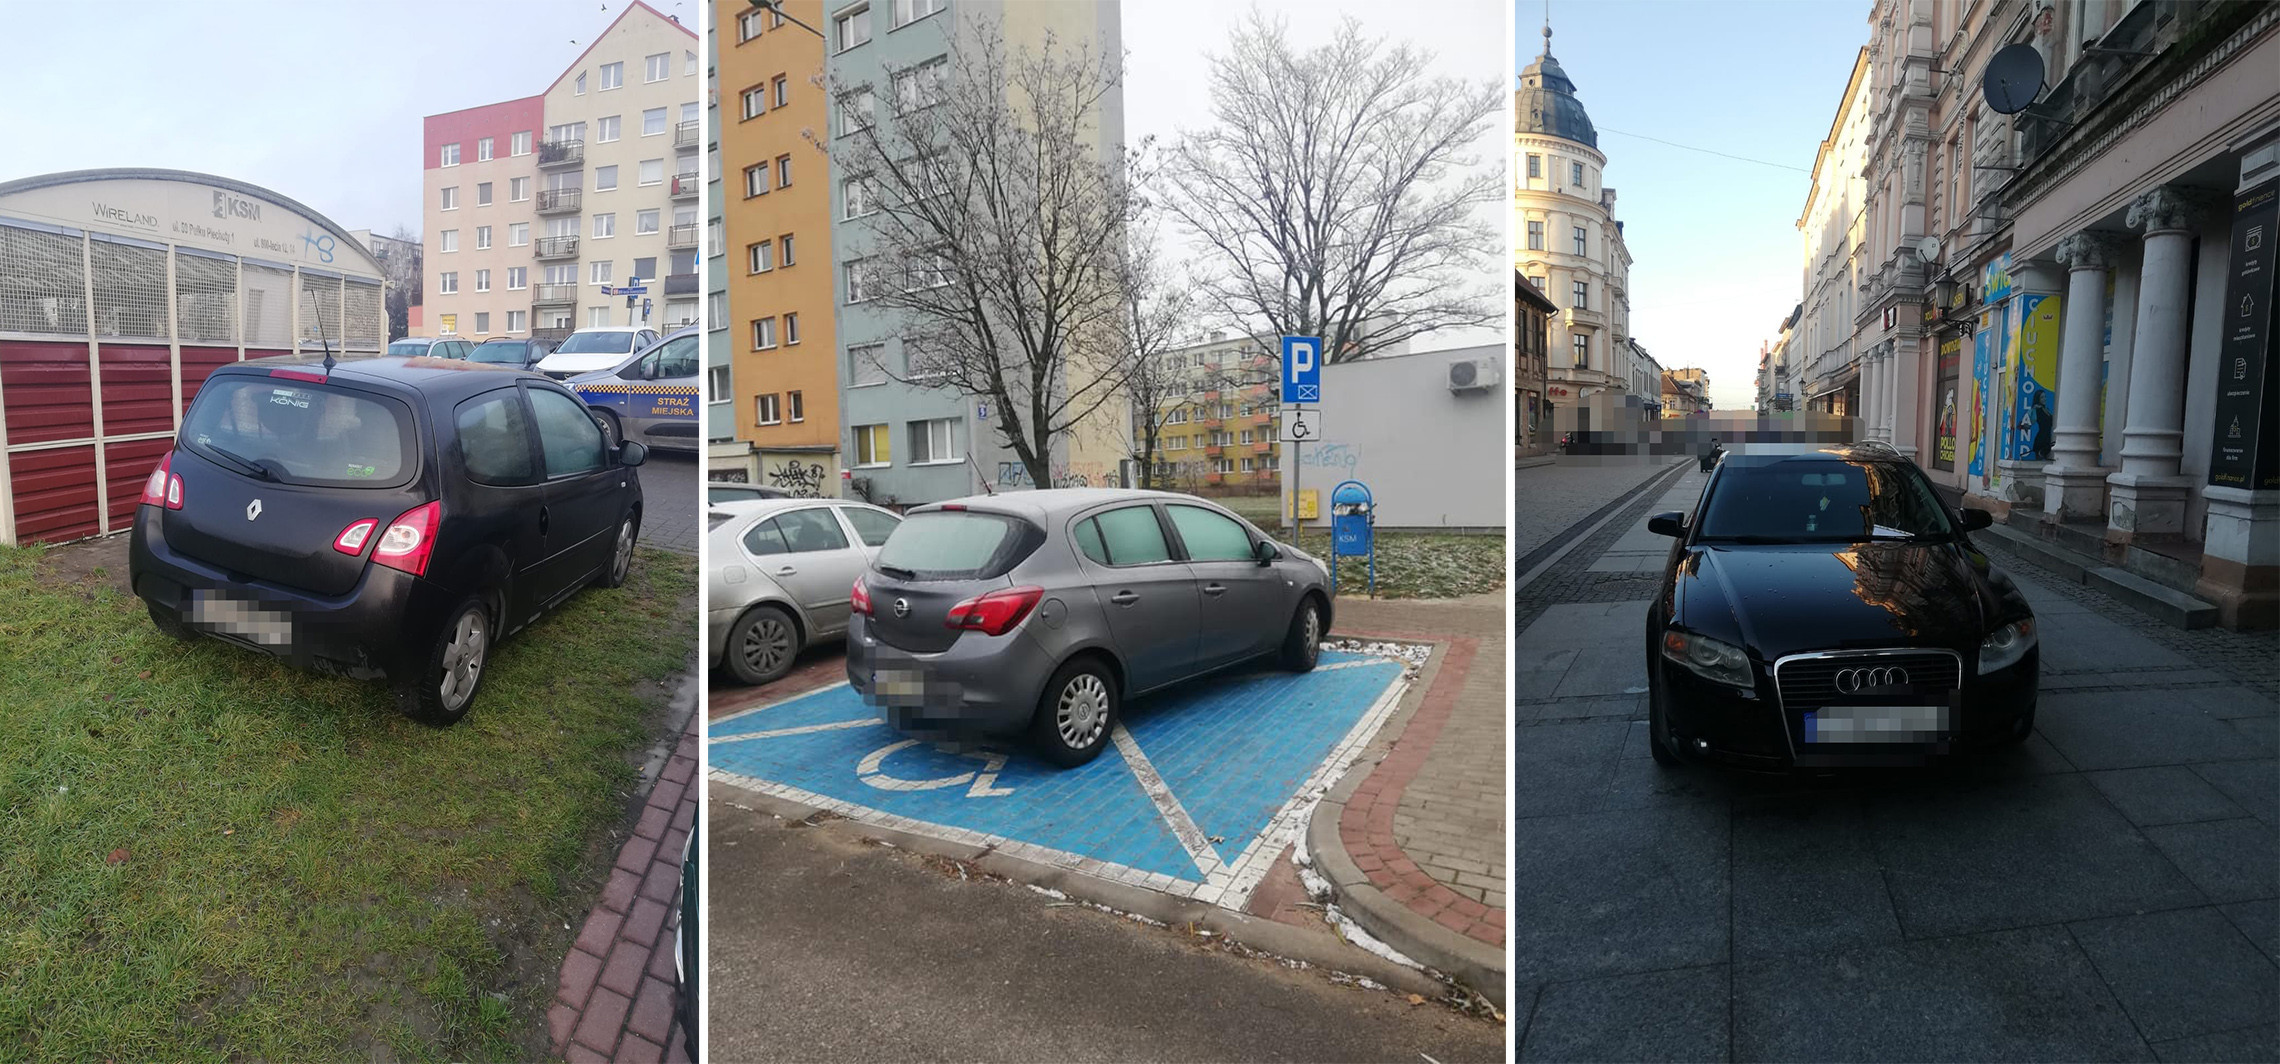 Inowrocław - W tych miejscach parkować nie wolno. Straż miejska publikuje zdjęcia